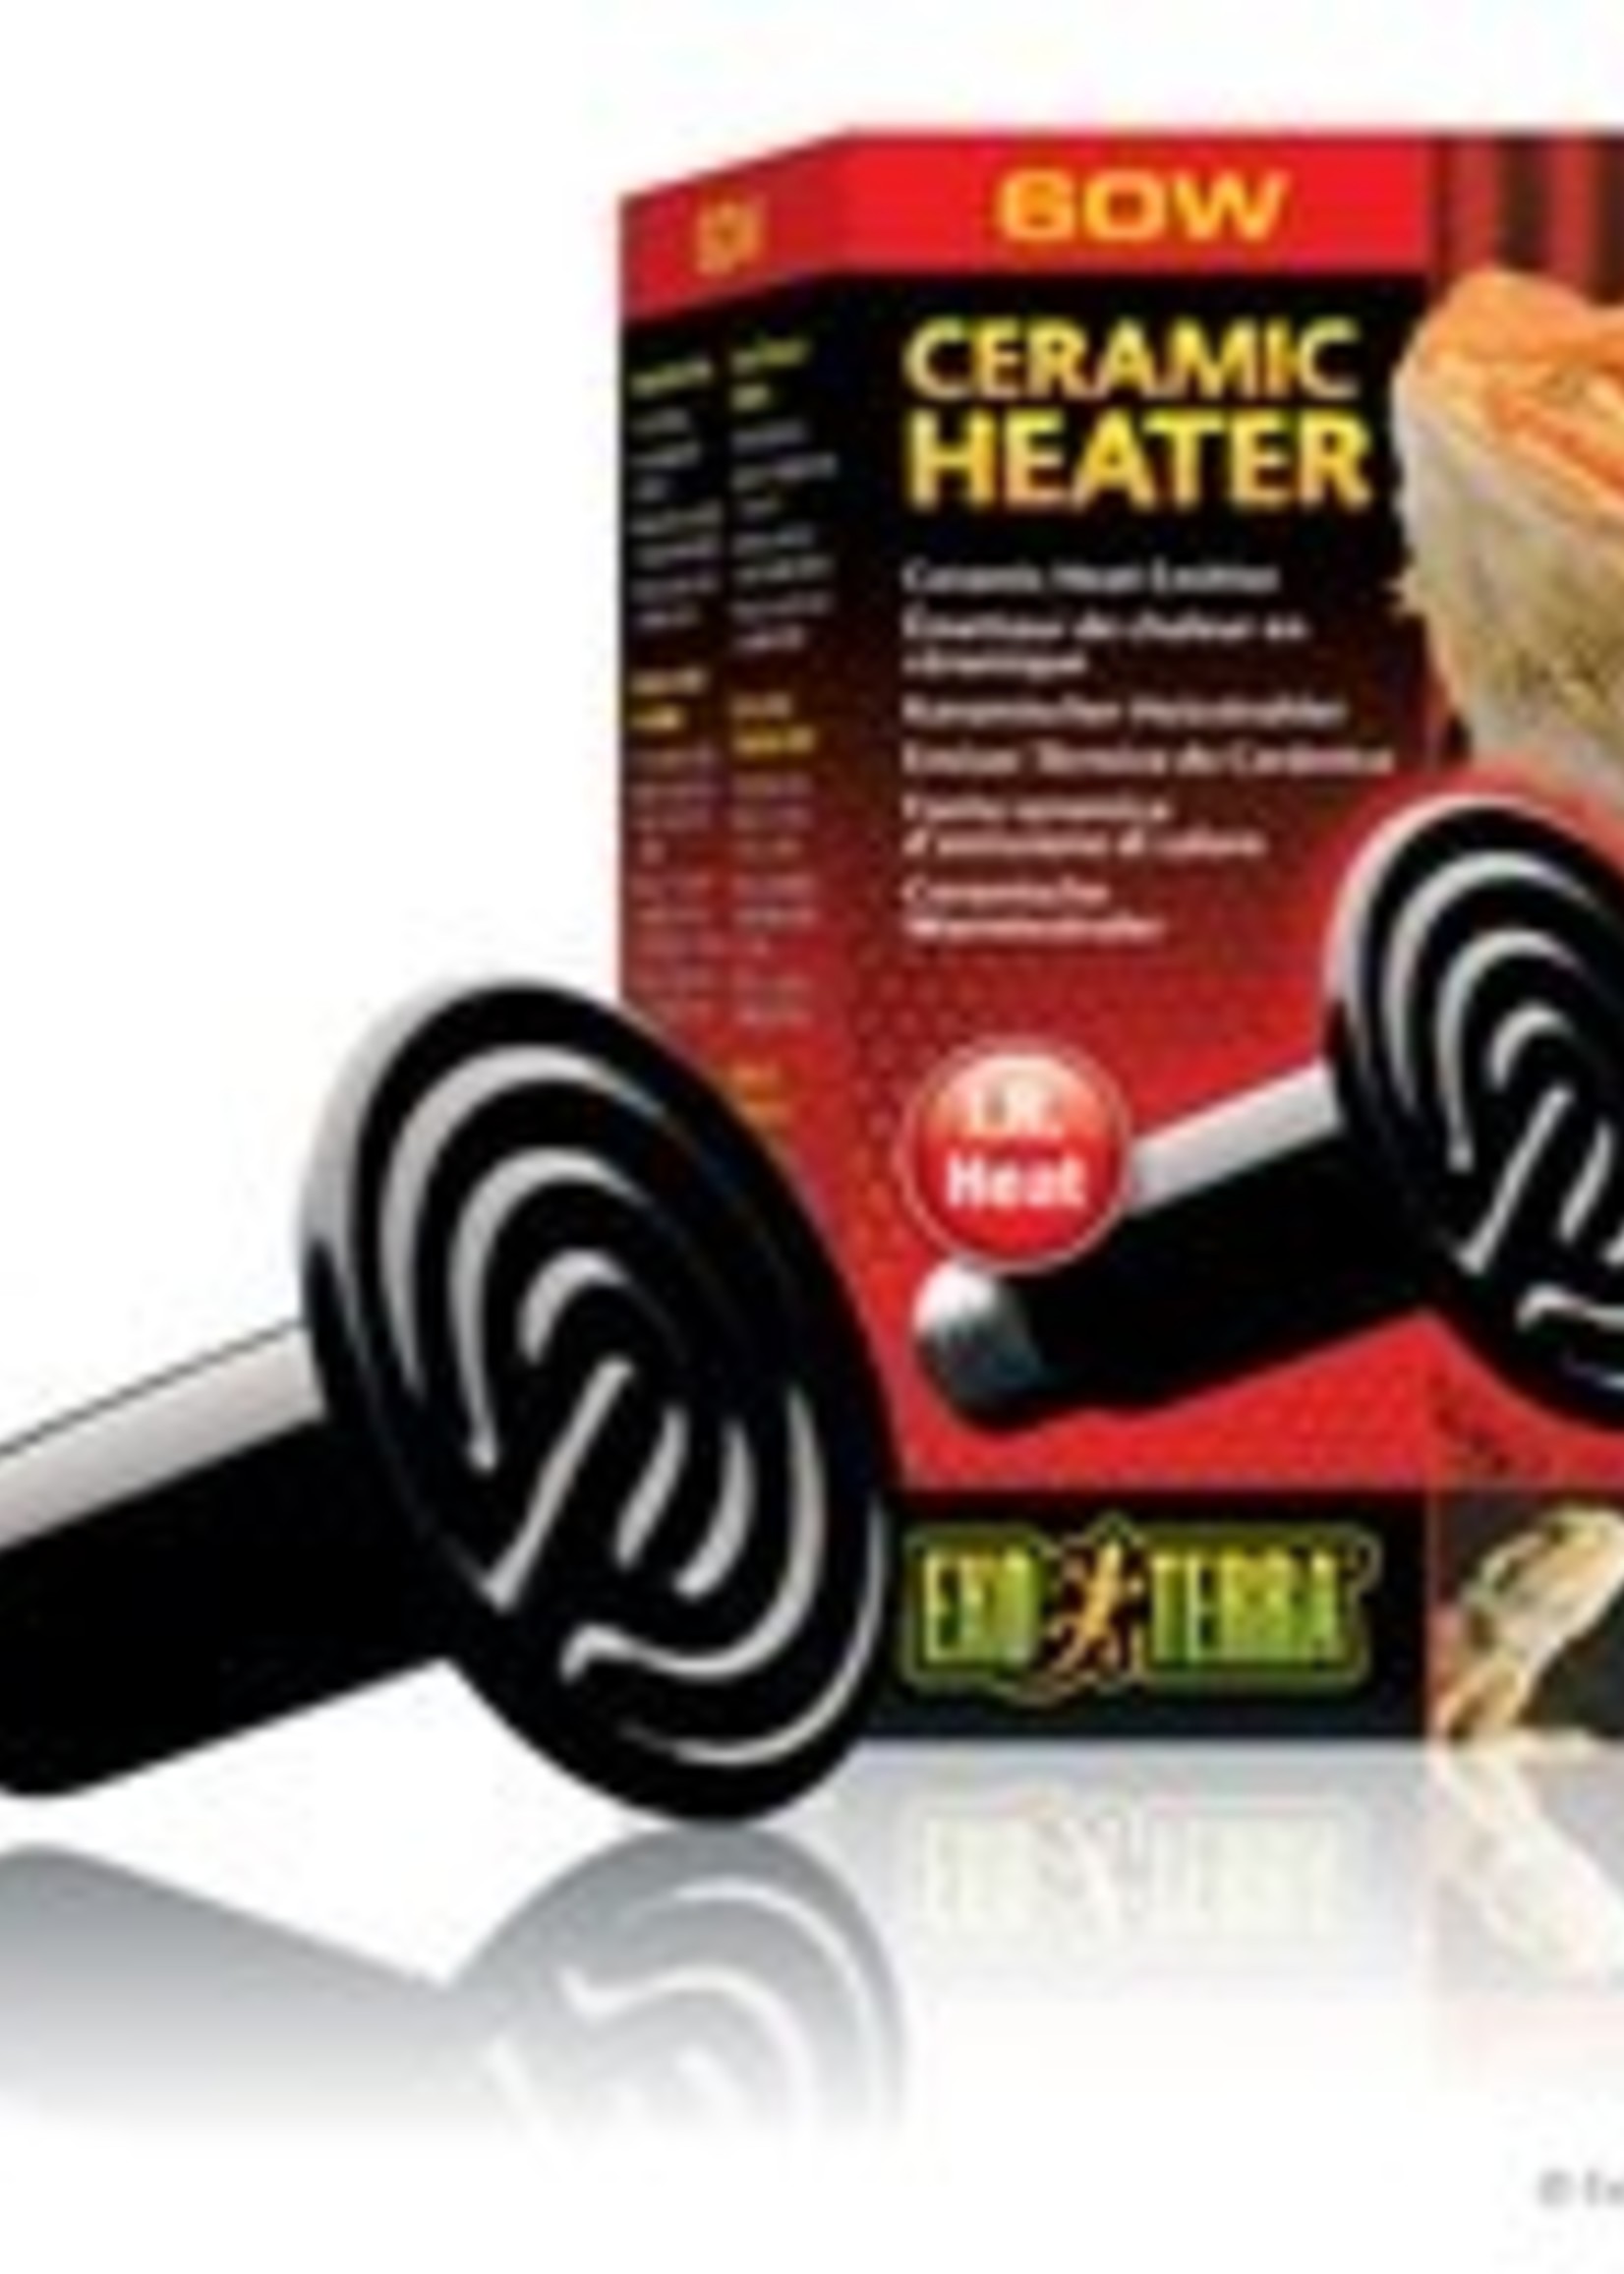 Exo Terra Ceramic Heater - 60 W